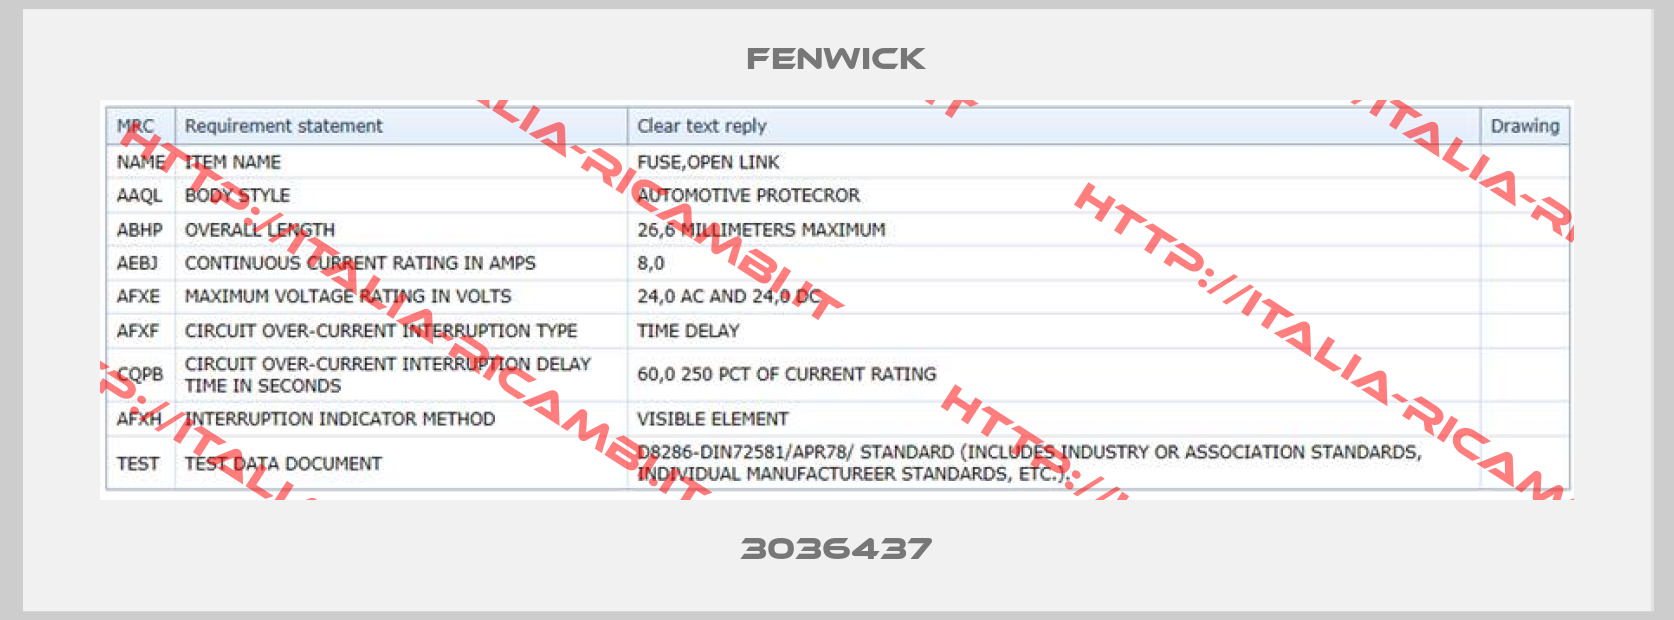 Fenwick-3036437